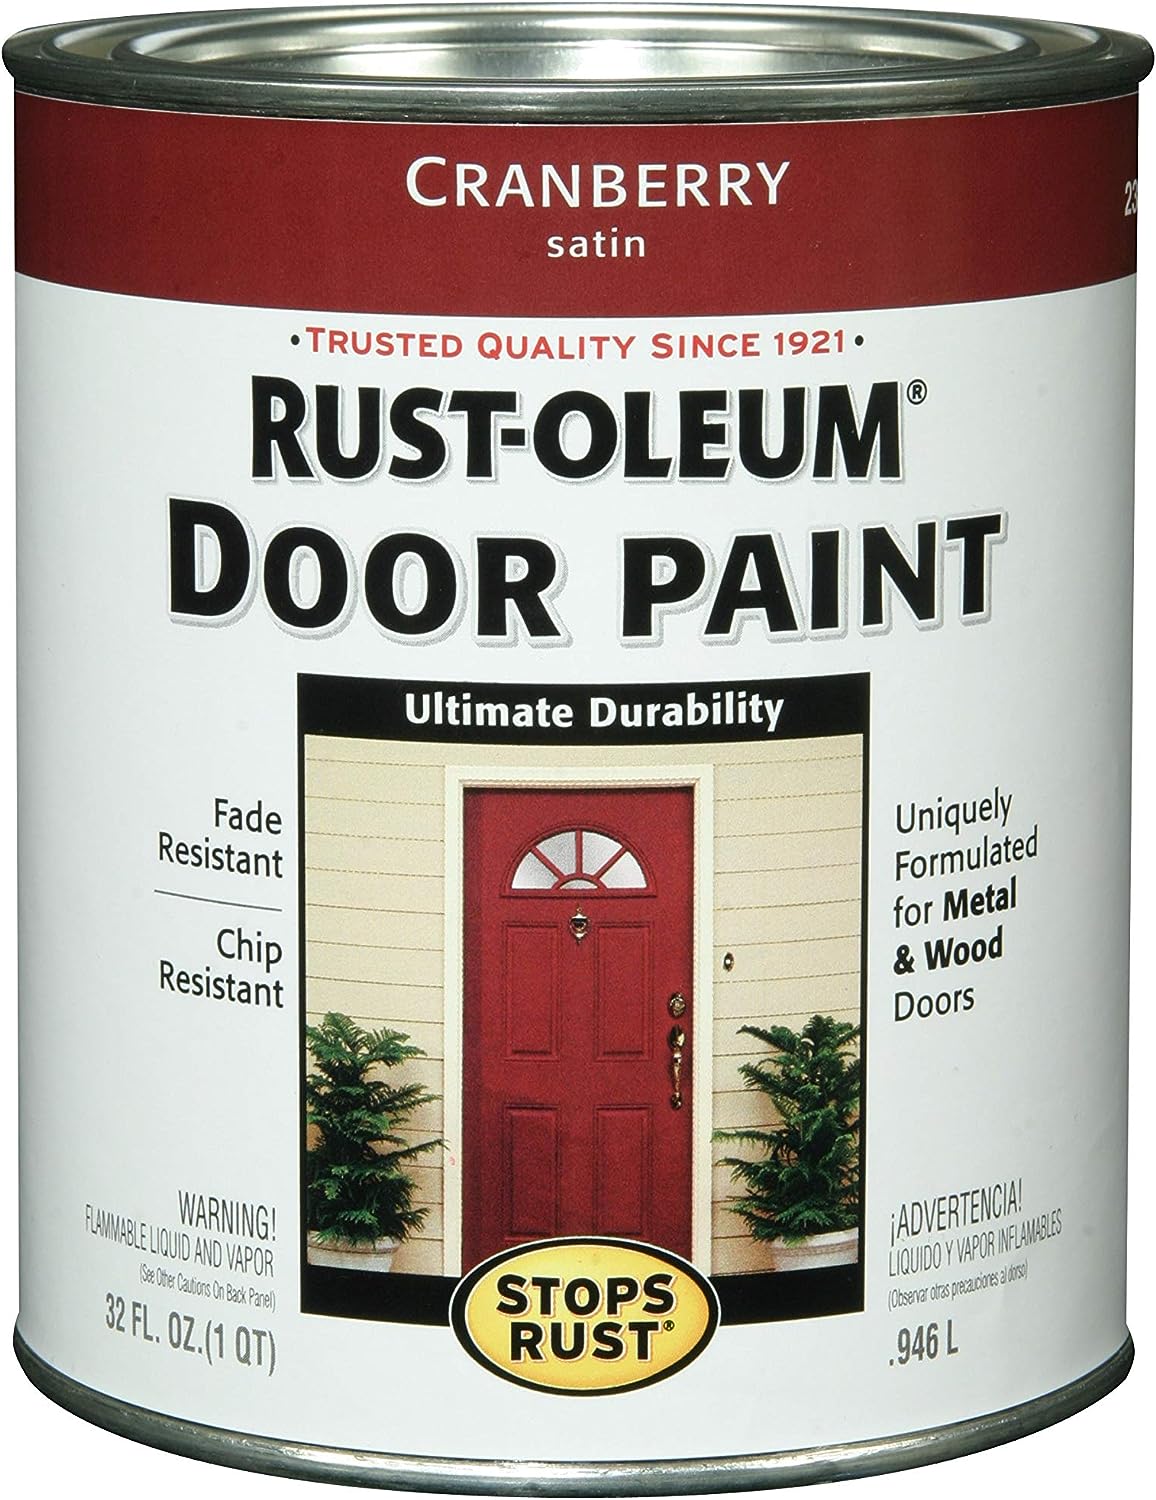 Rust-Oleum Stops Rust Front 238314 Enamel Door Paint, [...]